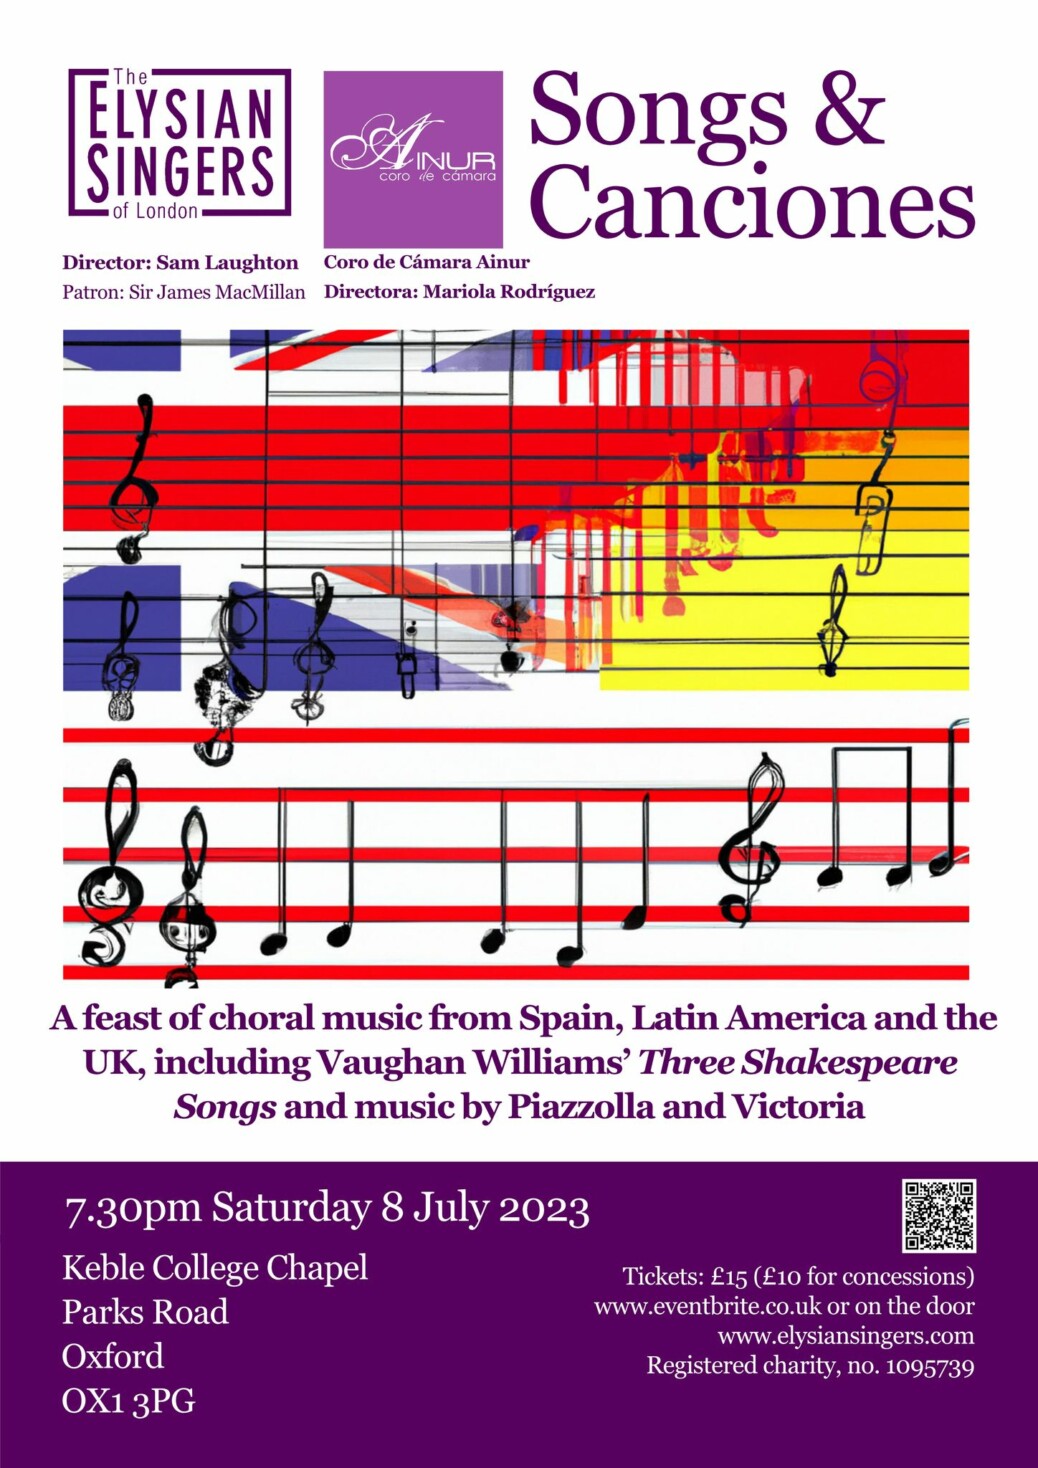 Song Canciones, cartel del concierto en Oxford